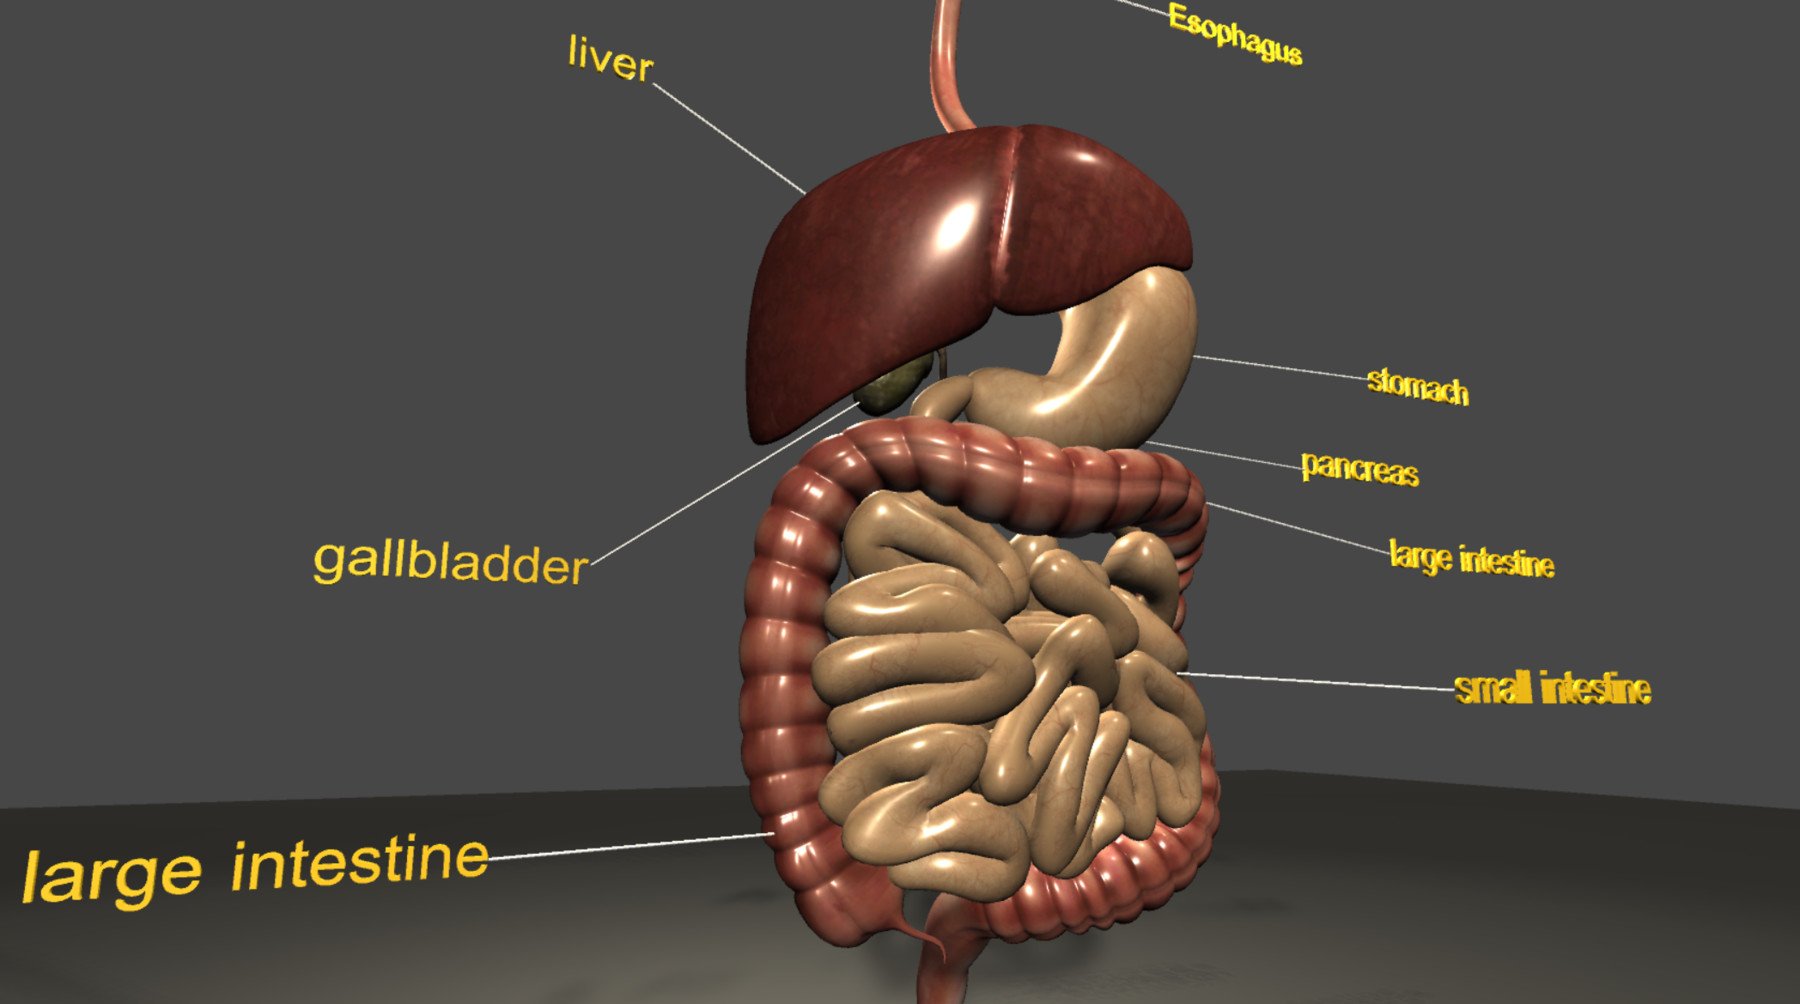 ArtStation - digestive system 3D Model | Resources